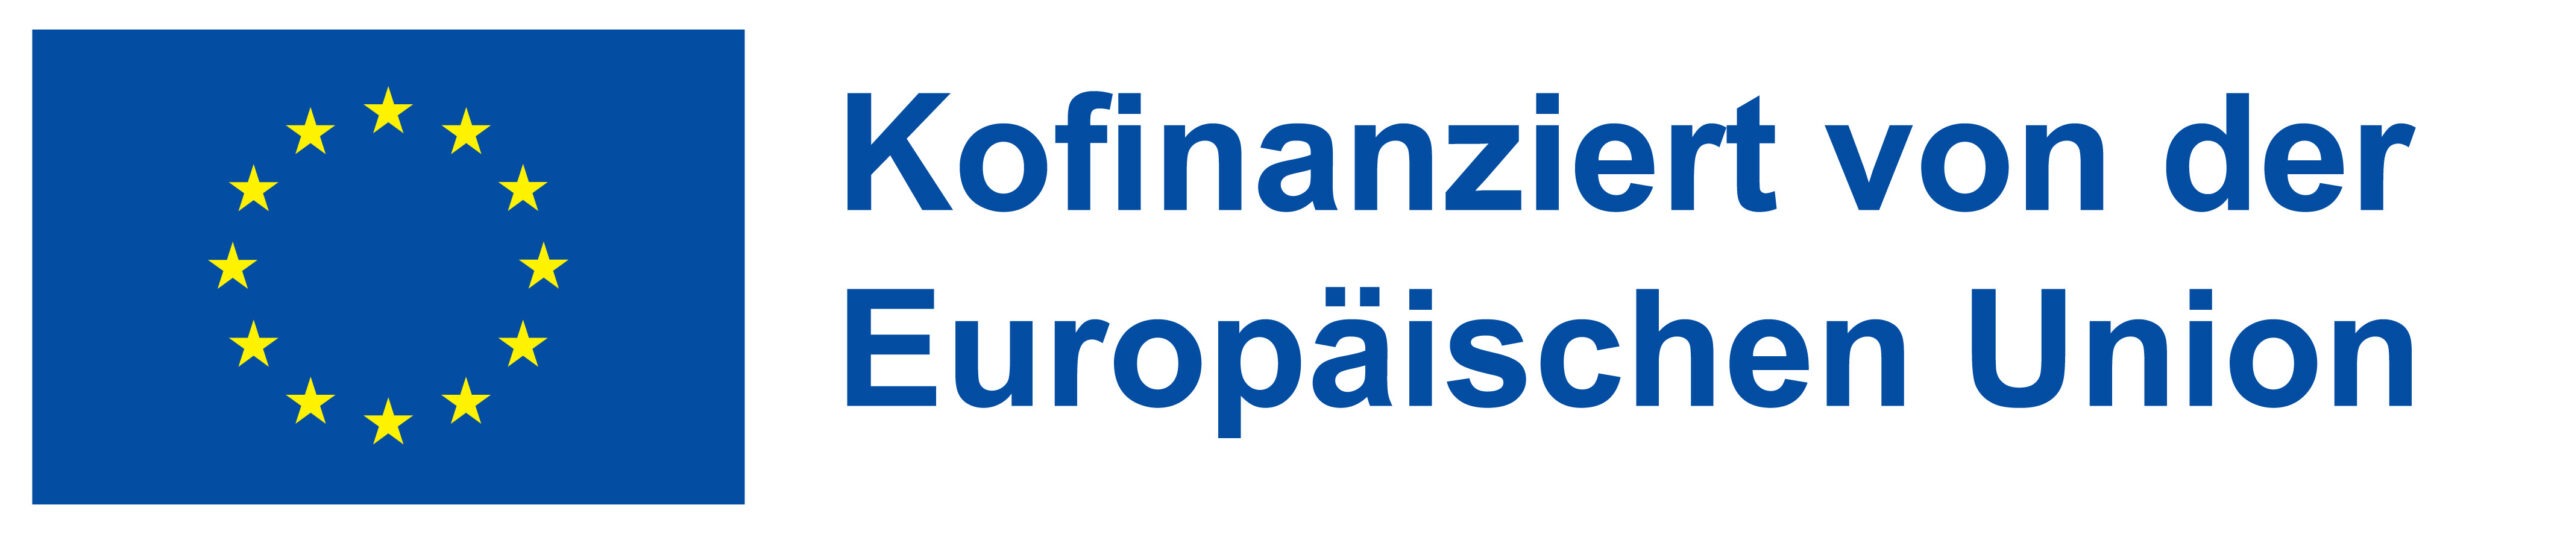 ESF - Europäischer Sozialfonds Plus Förderperiode 2021-2027 - Logo_neu_Kofinanziert+von+der+Europäischen+Union_POS